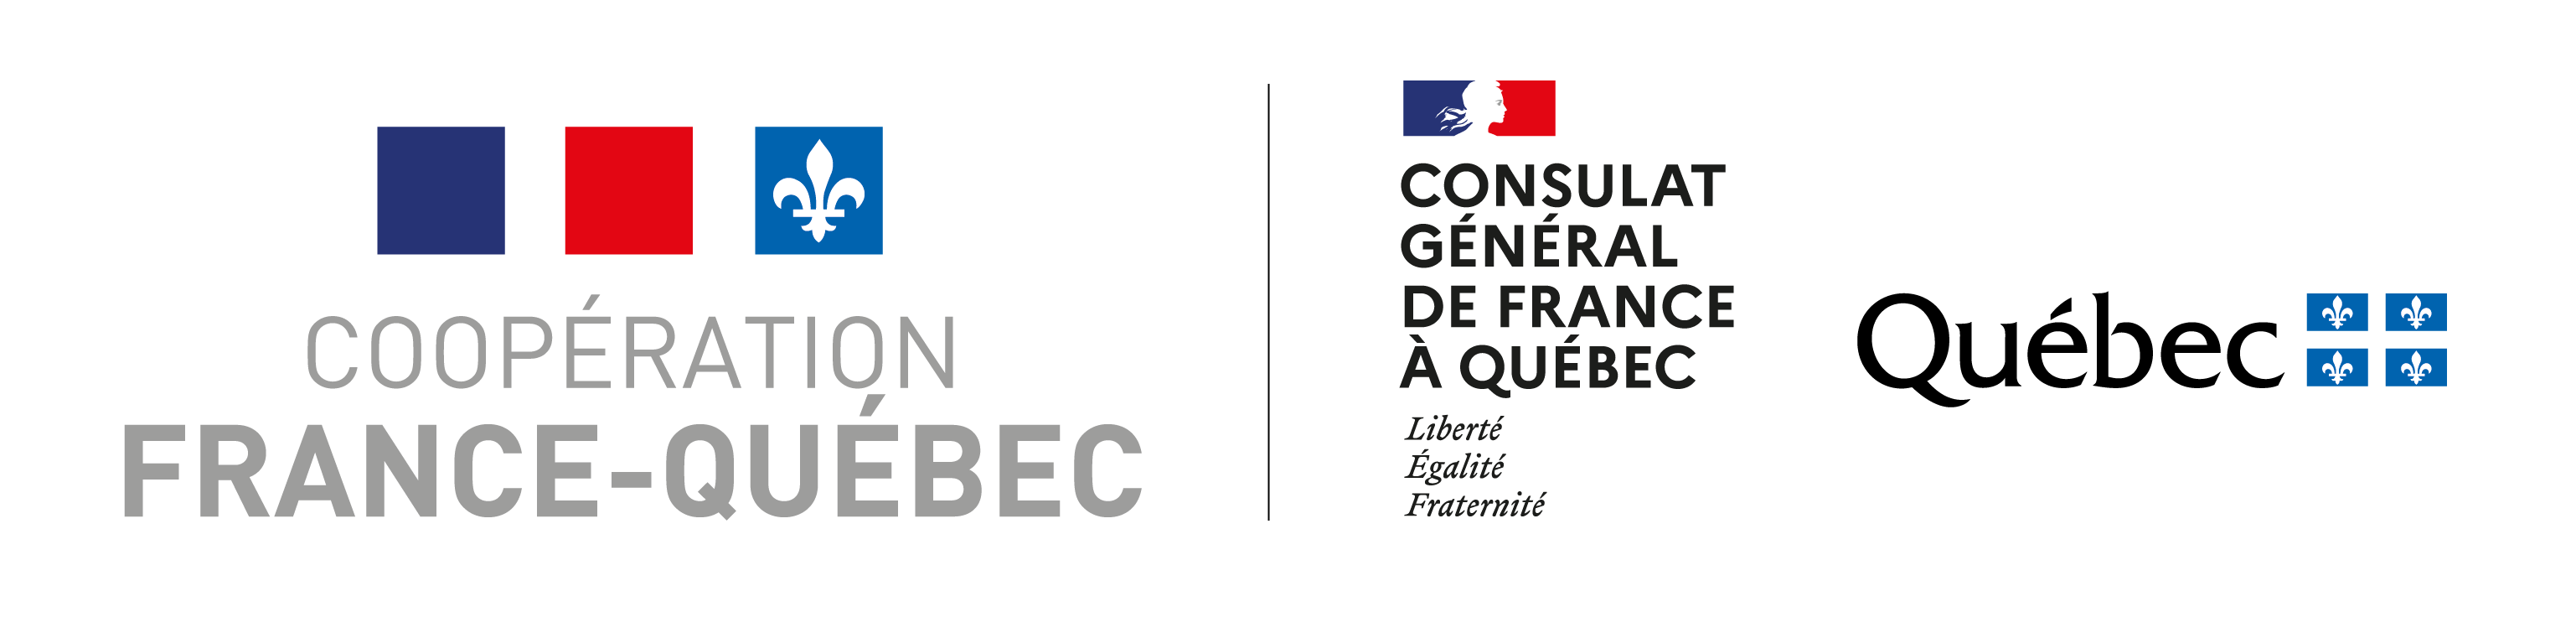 Archives gaies du Québec - Mémoires de nos communautés